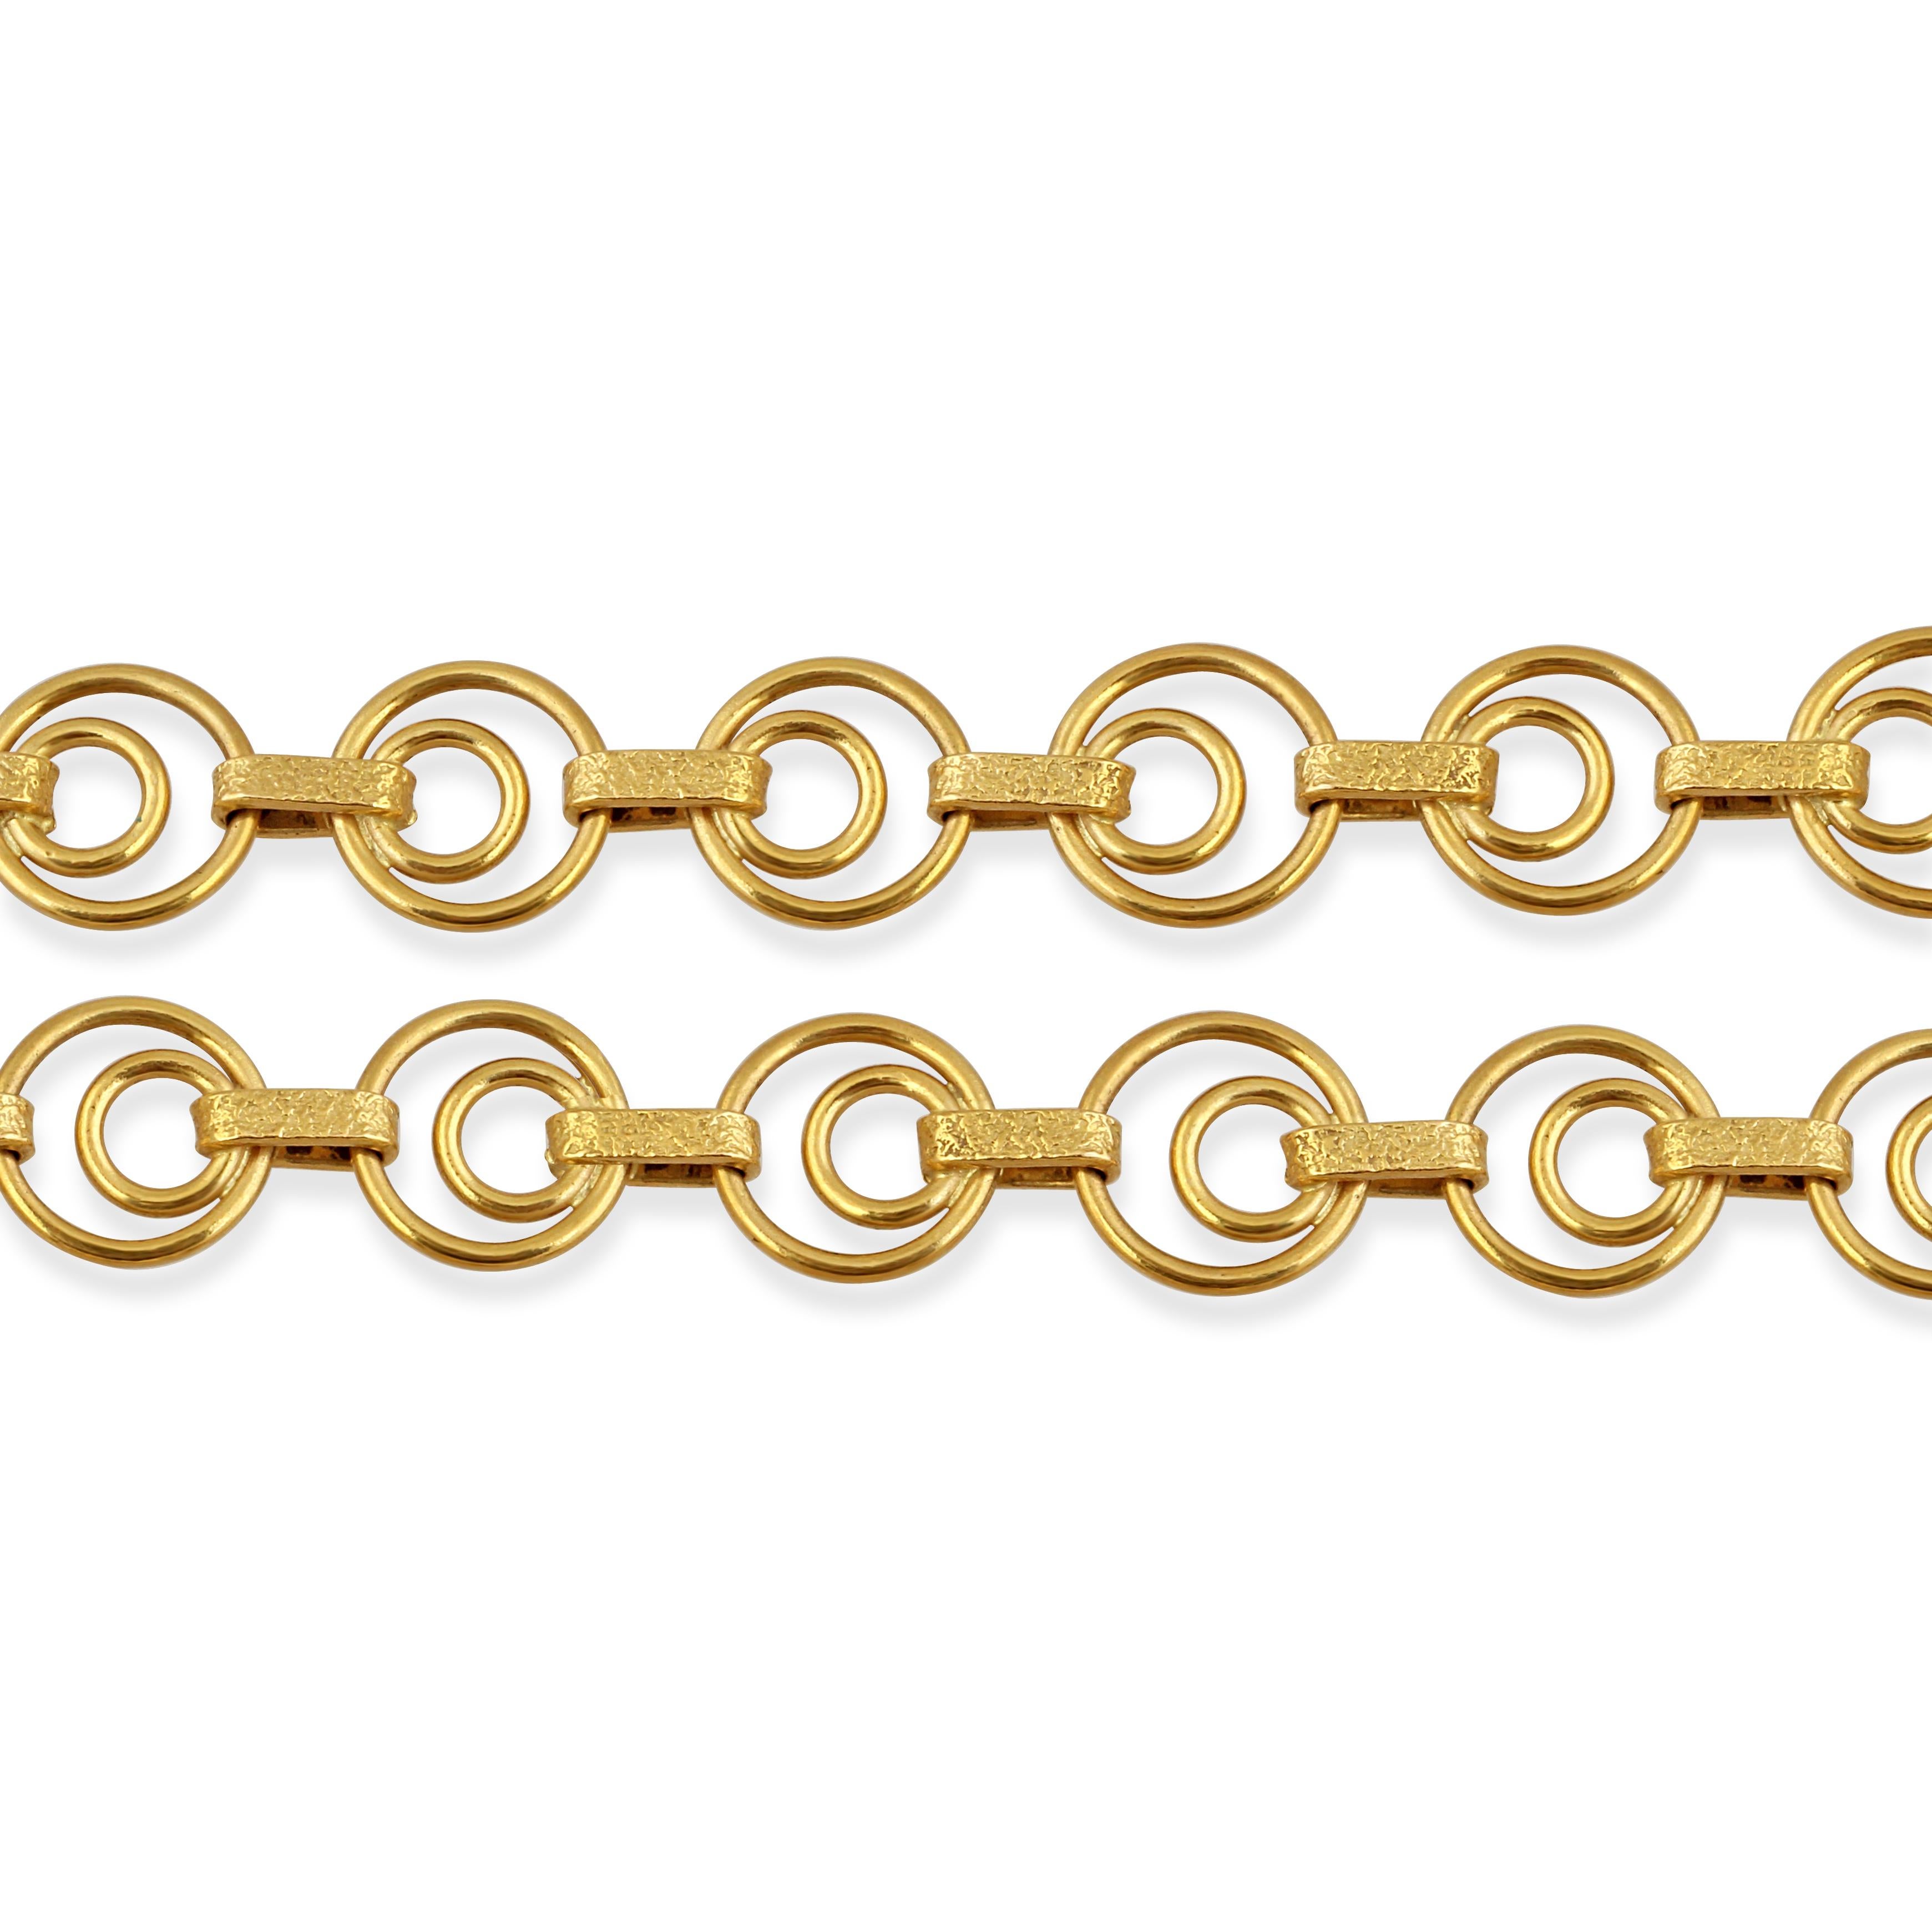 Collier en chaîne en or jaune 18 carats avec des anneaux doubles et des entretoises en or texturé.

Longueur : 80 cm
Poids : 34.20gr
